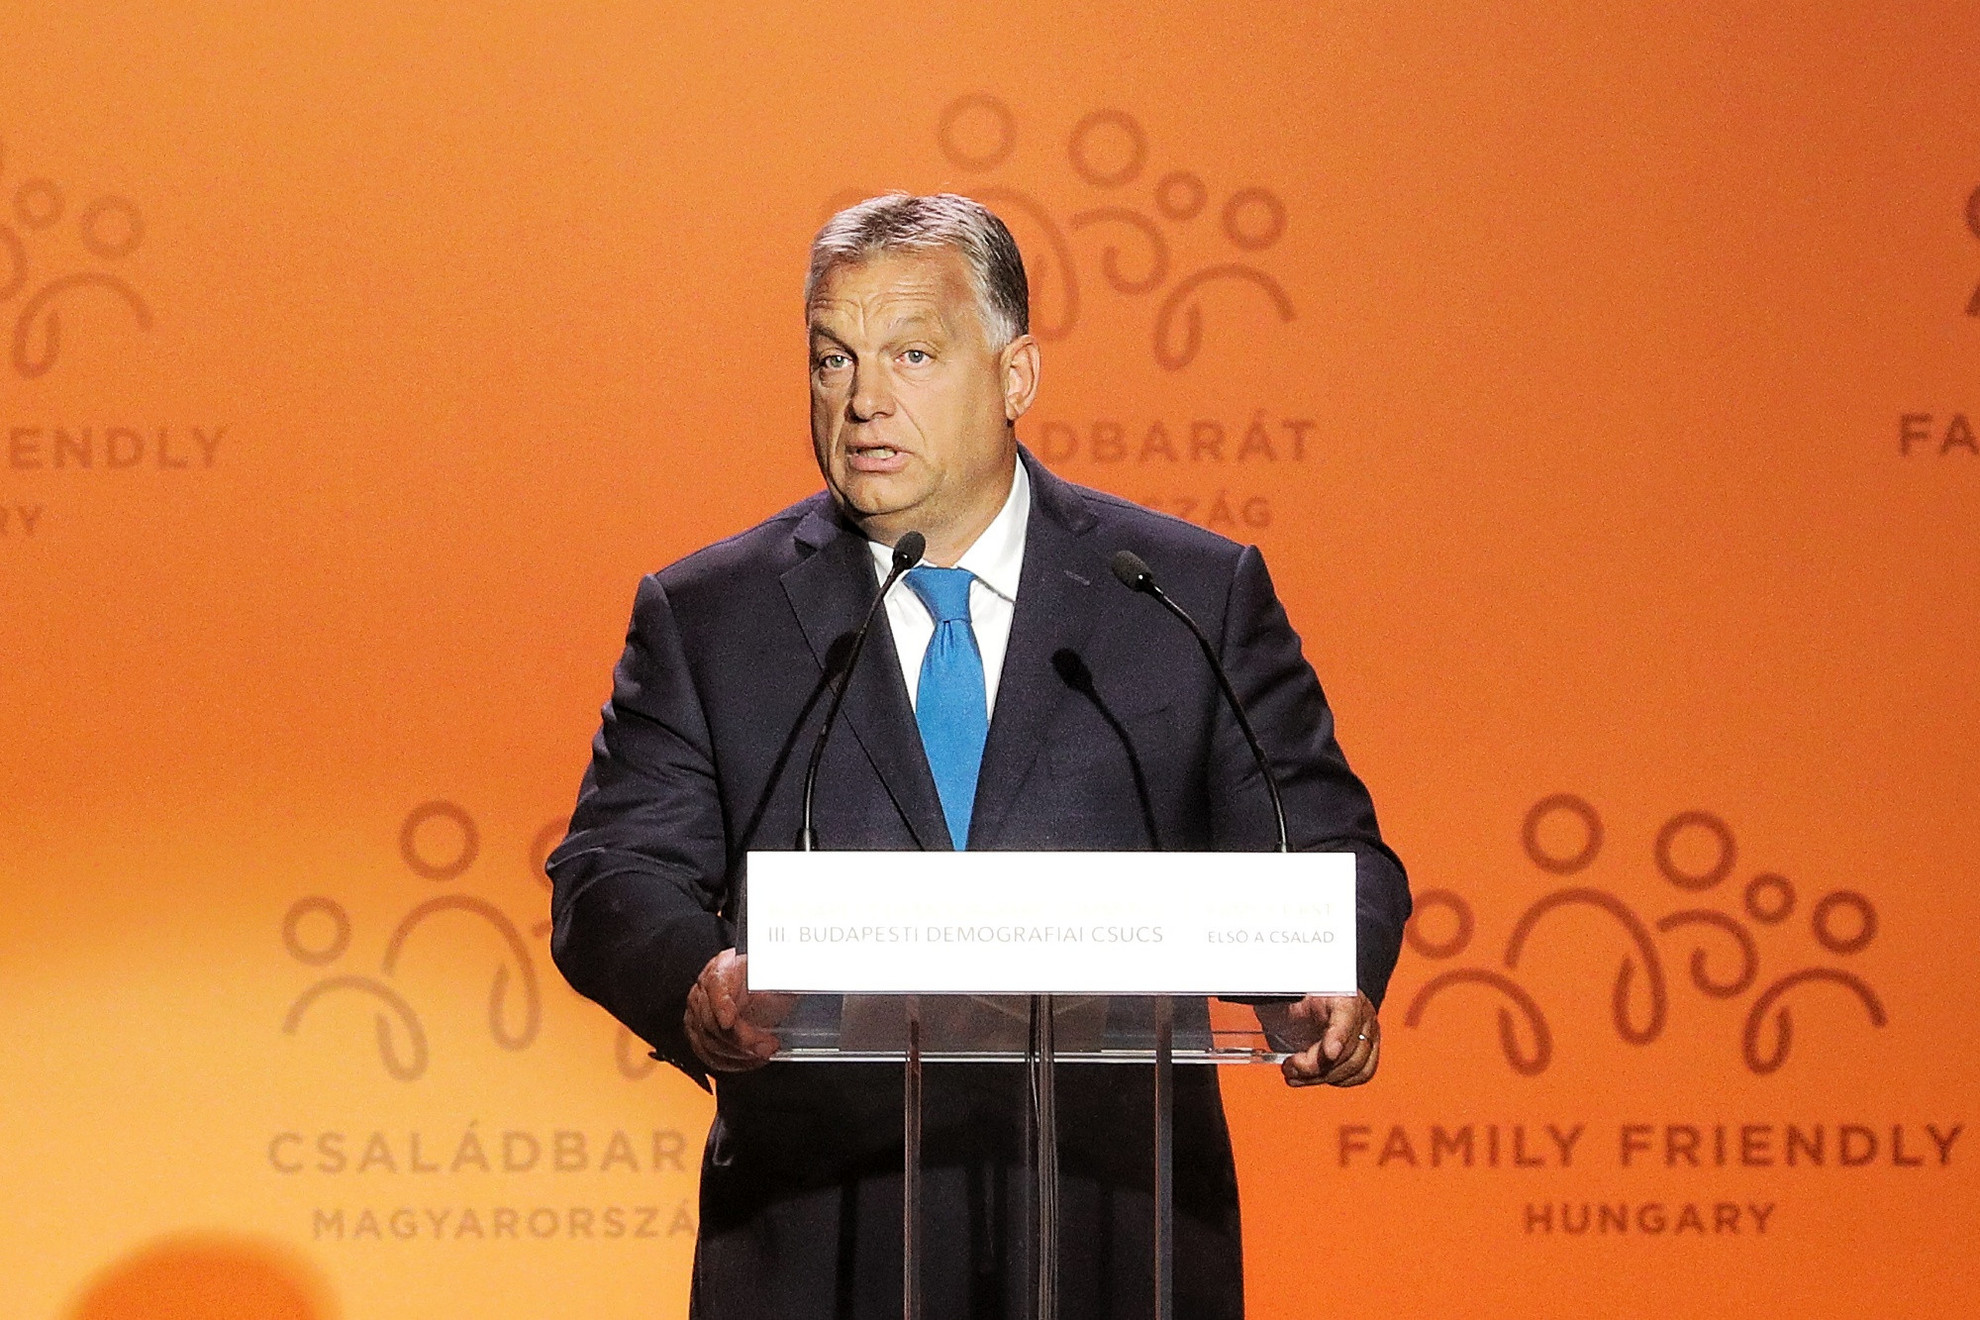 Fontos kiemelni, hogy a magyar családpolitika alkotmányos alapokon nyugszik